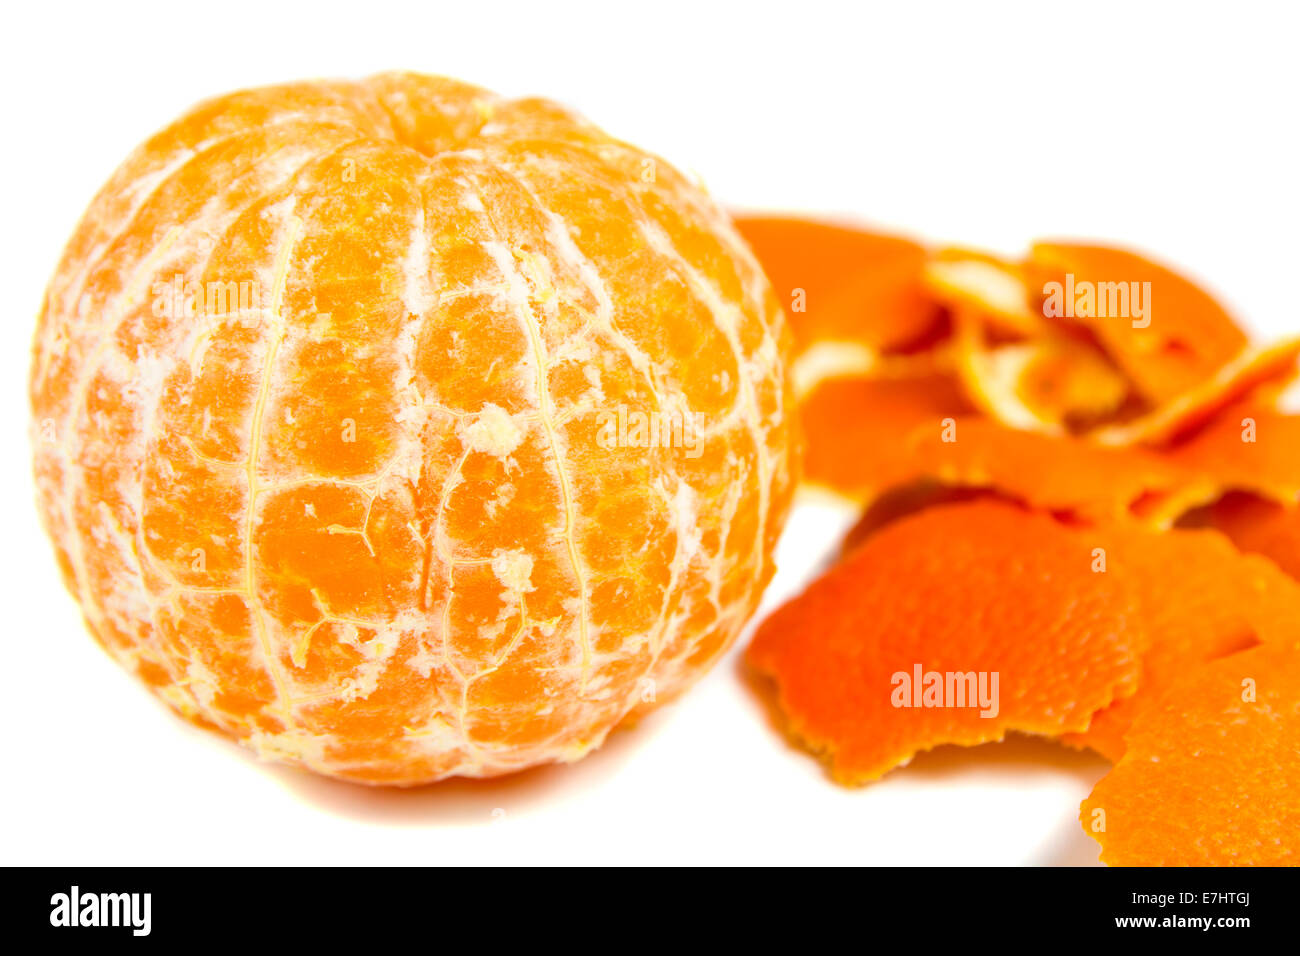 Orange and peel, isolated over white background Stock Photo